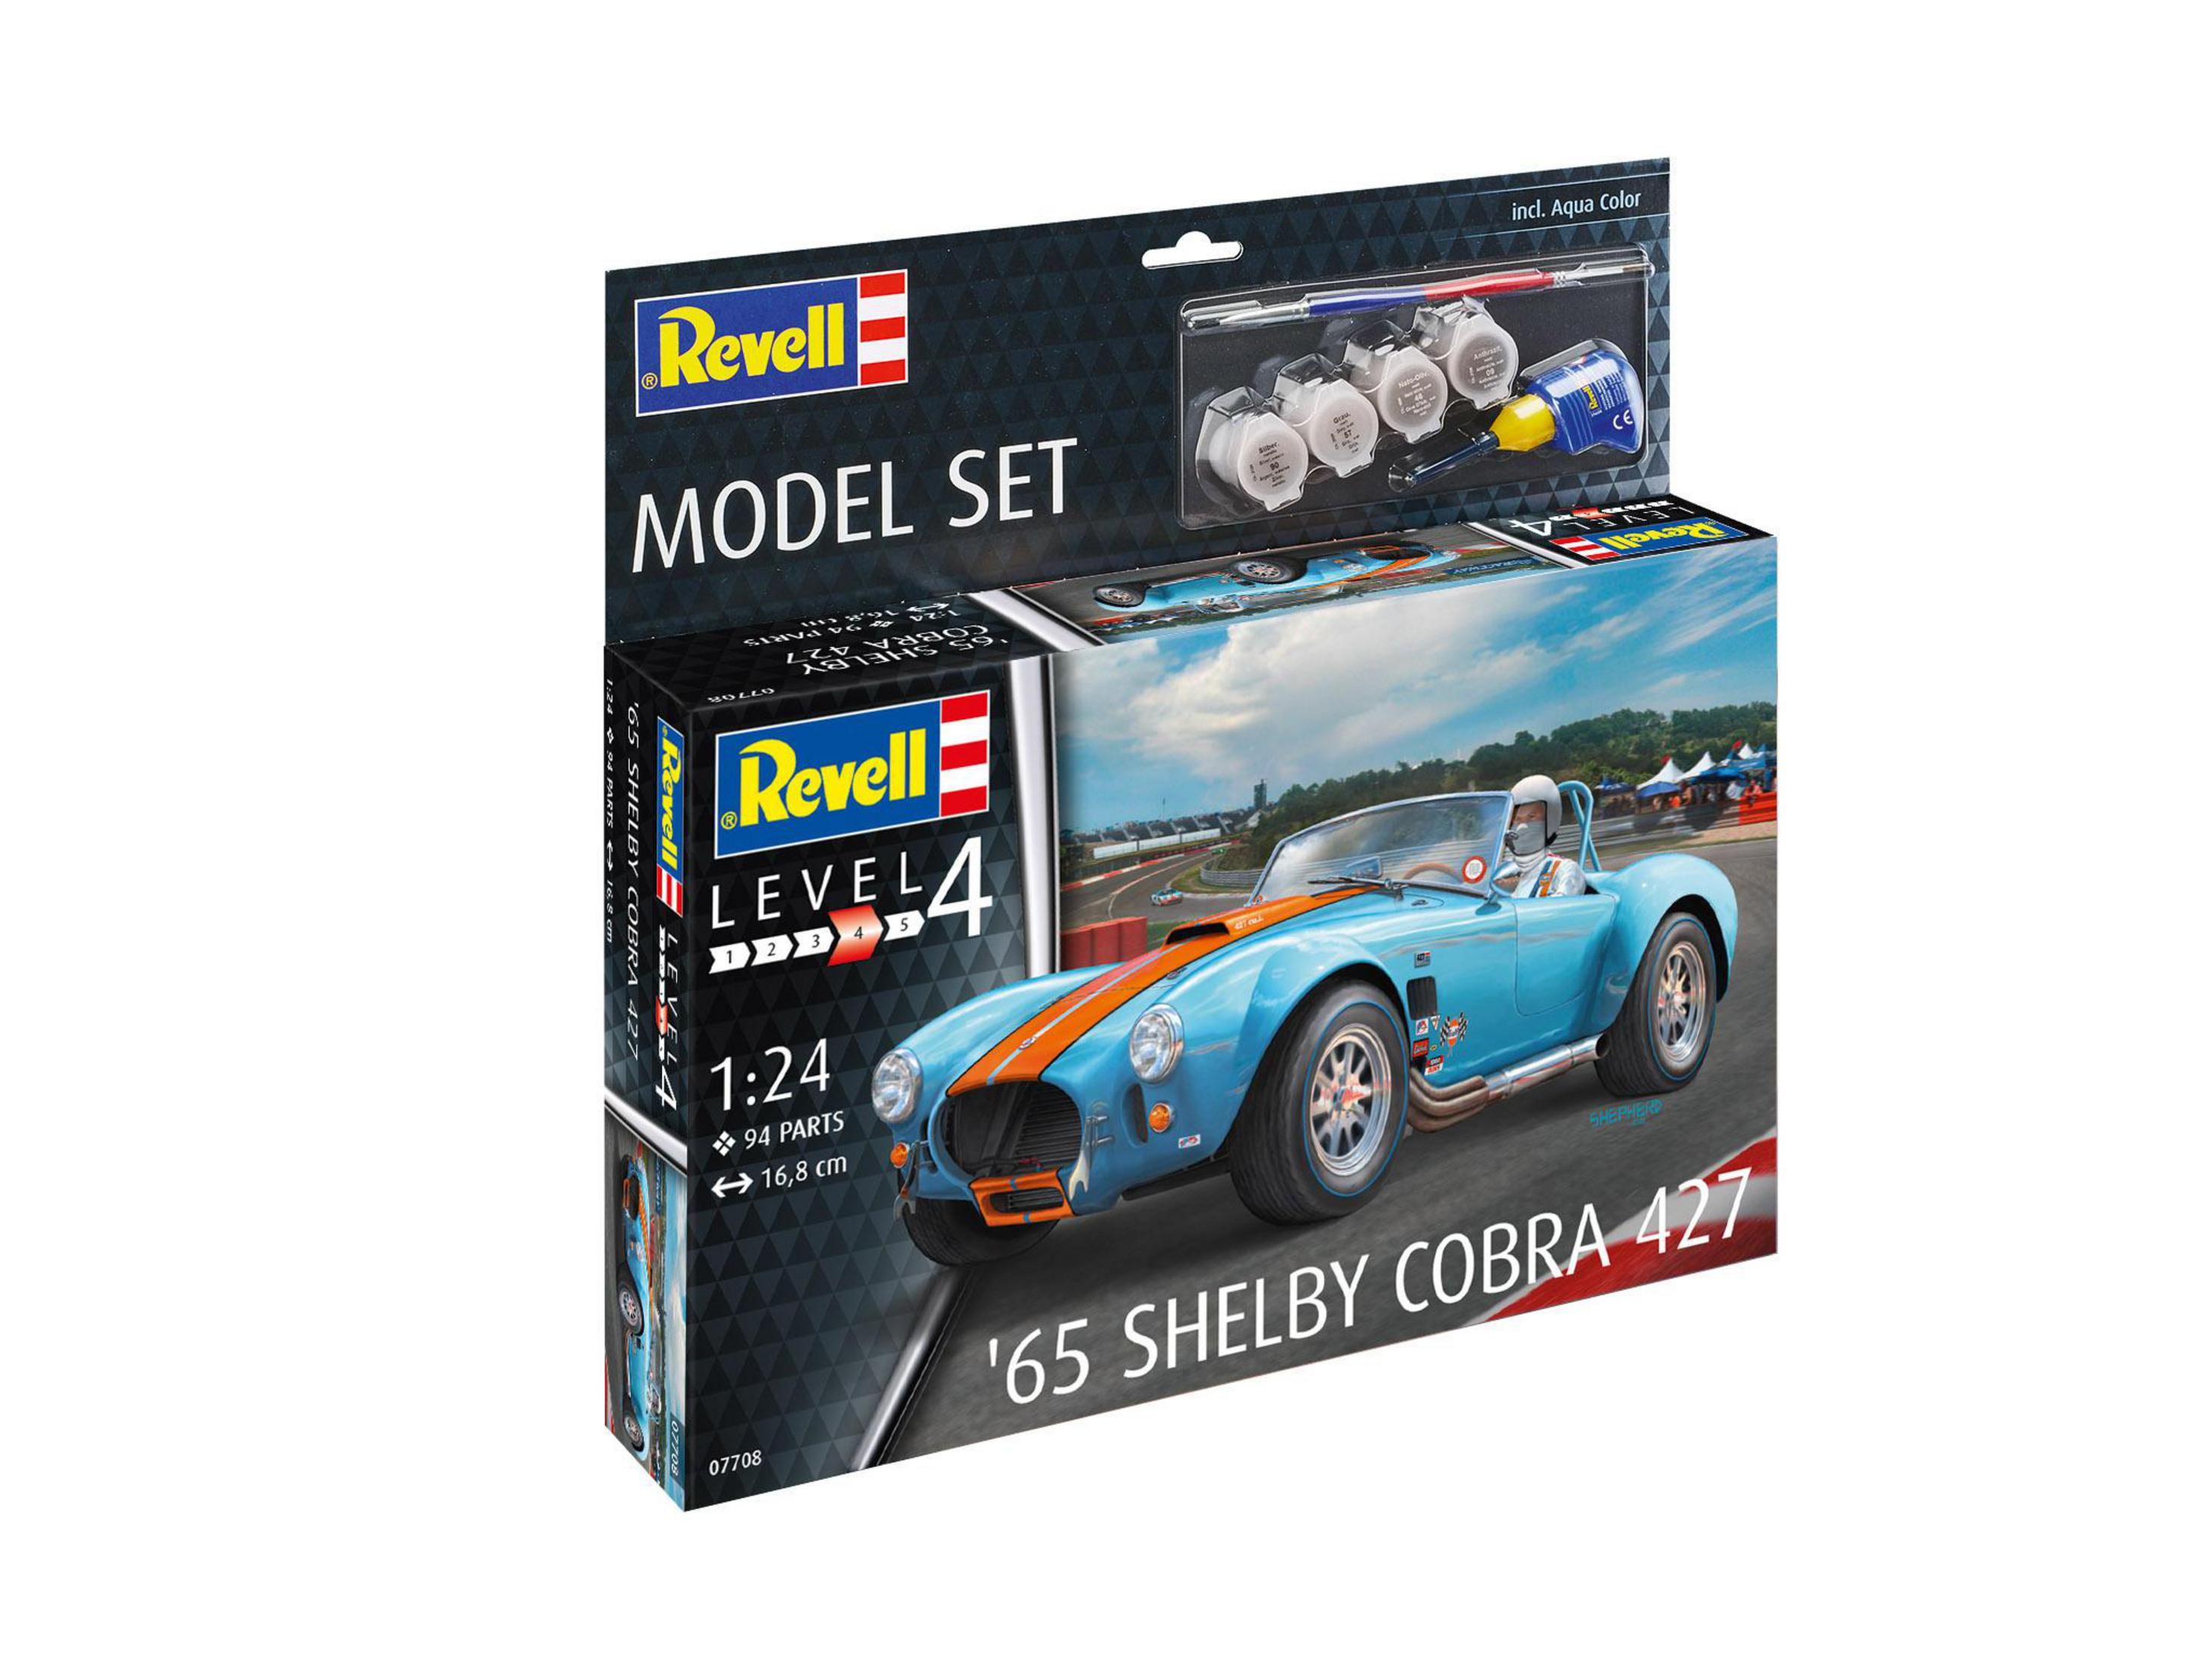 REVELL 67708 MODEL SET COBRA 427 Blau/Rot 65 SHELBY Modellbausatz